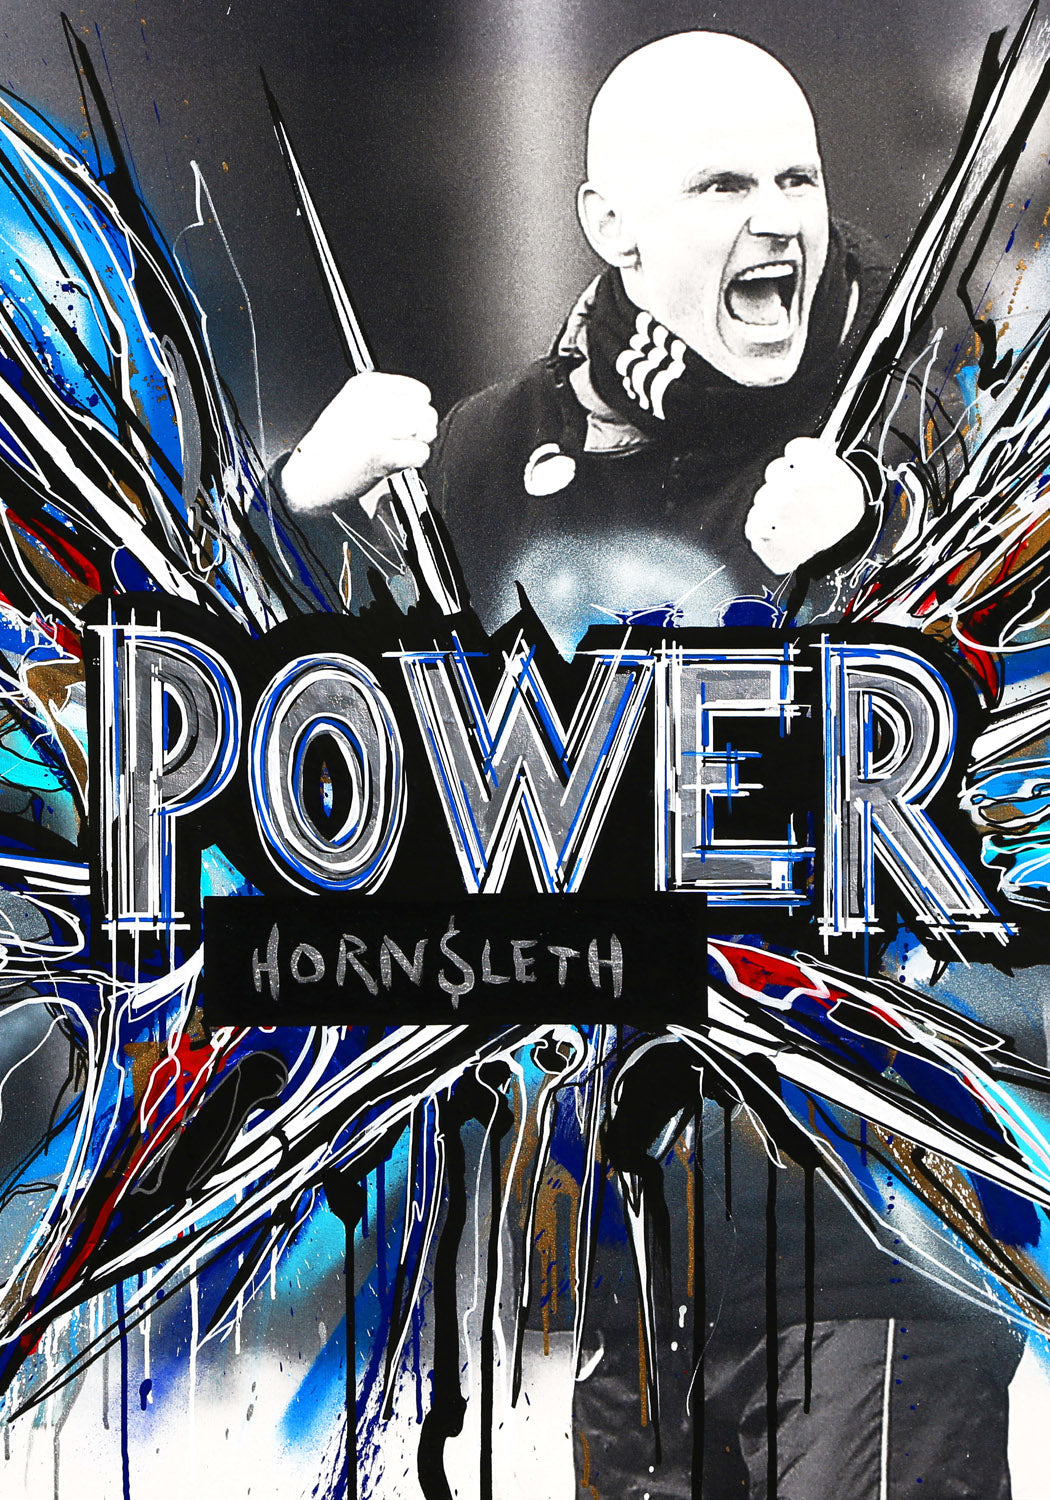 FCK - Power - Plakat af Hornsleth